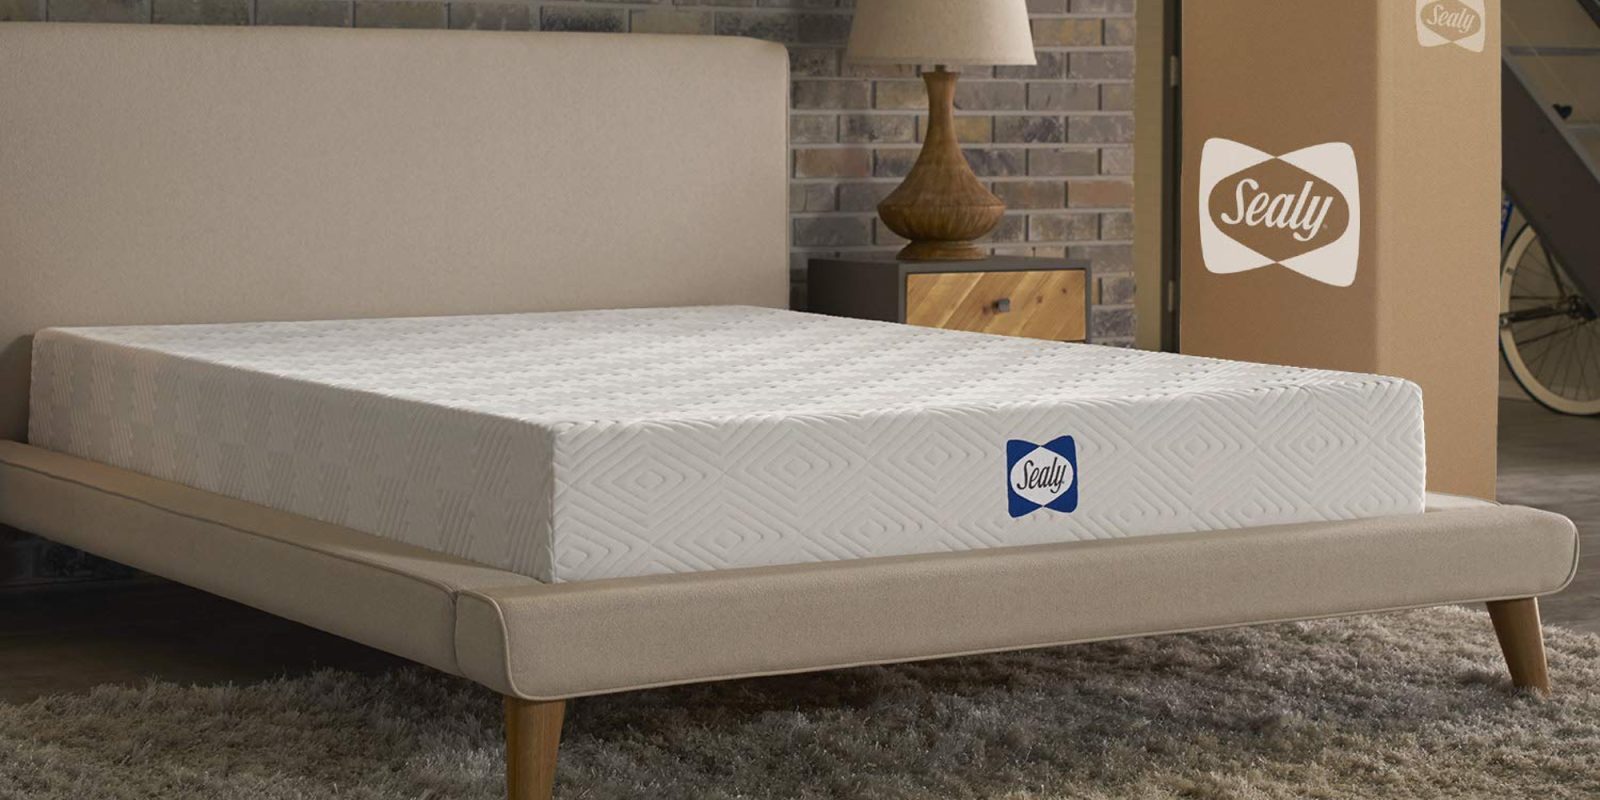 sealy memory foam mattress review